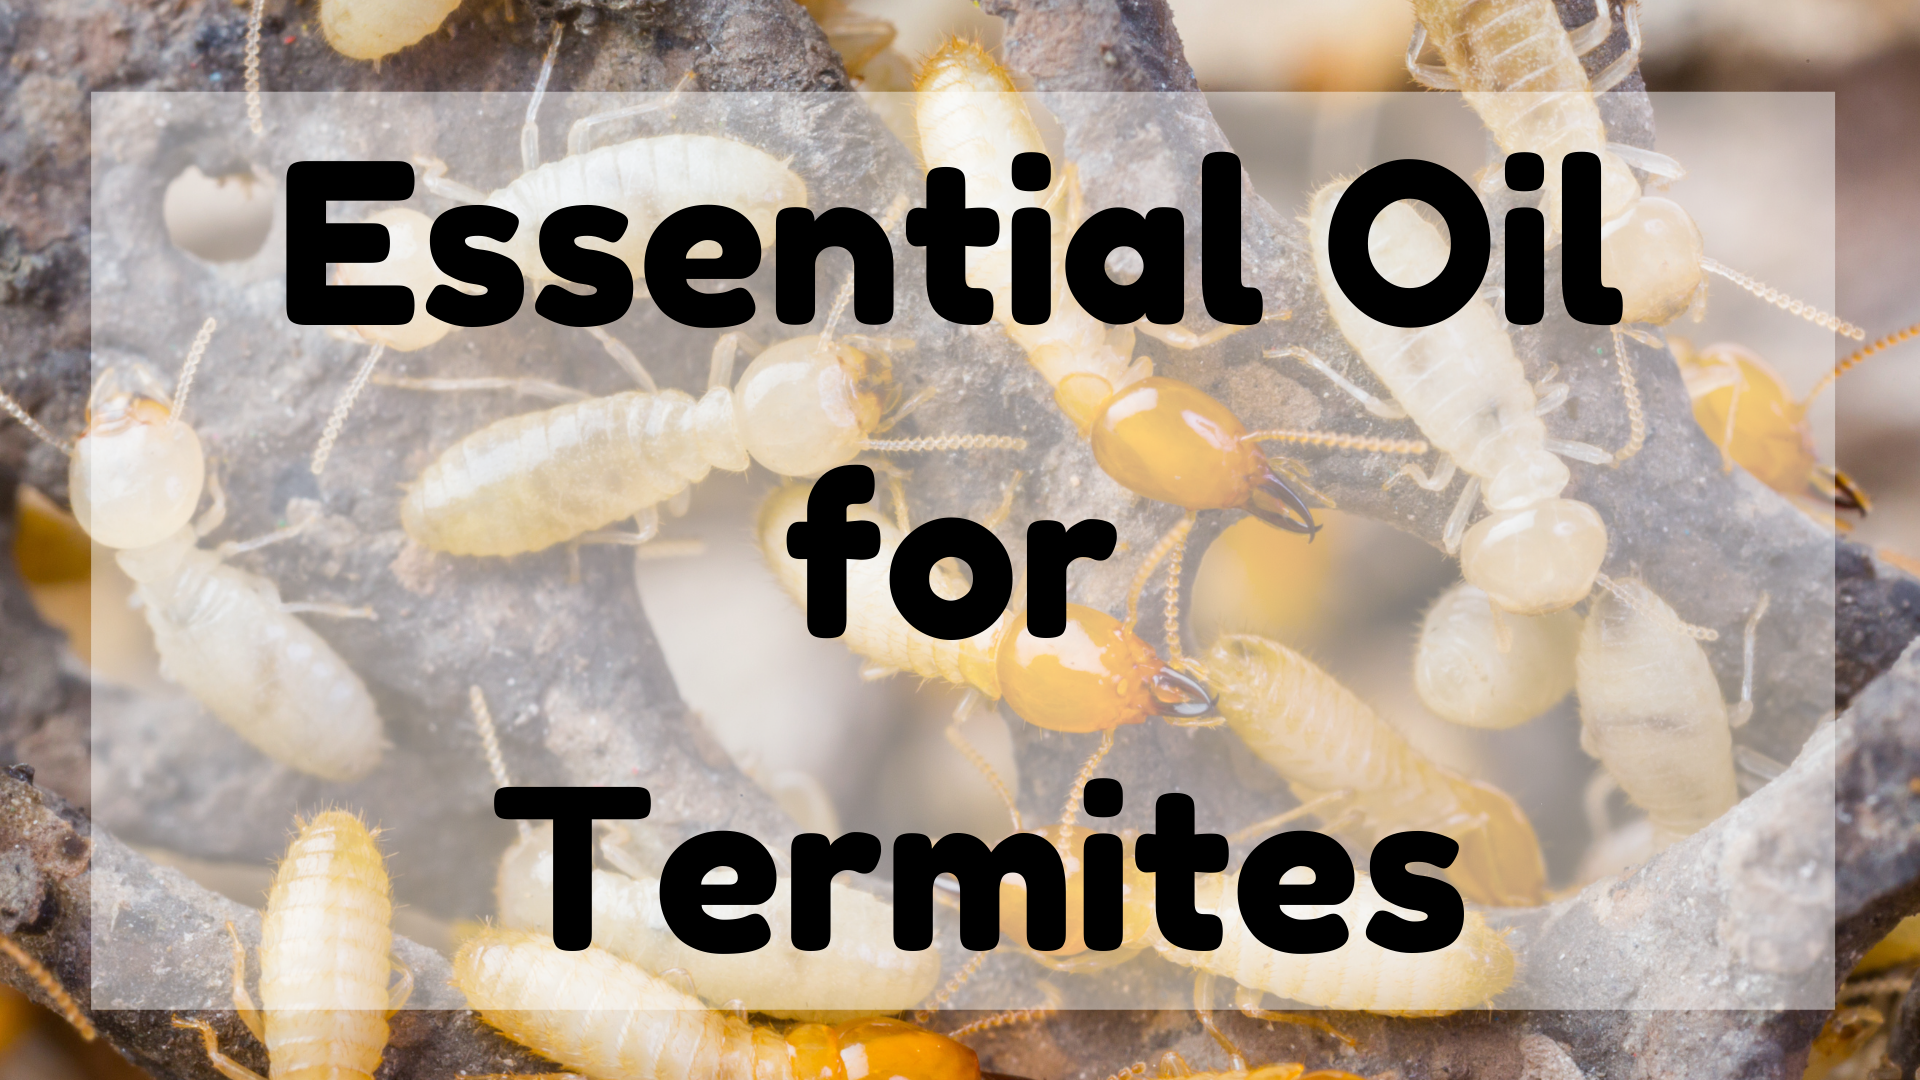 Essential Oil For Termites